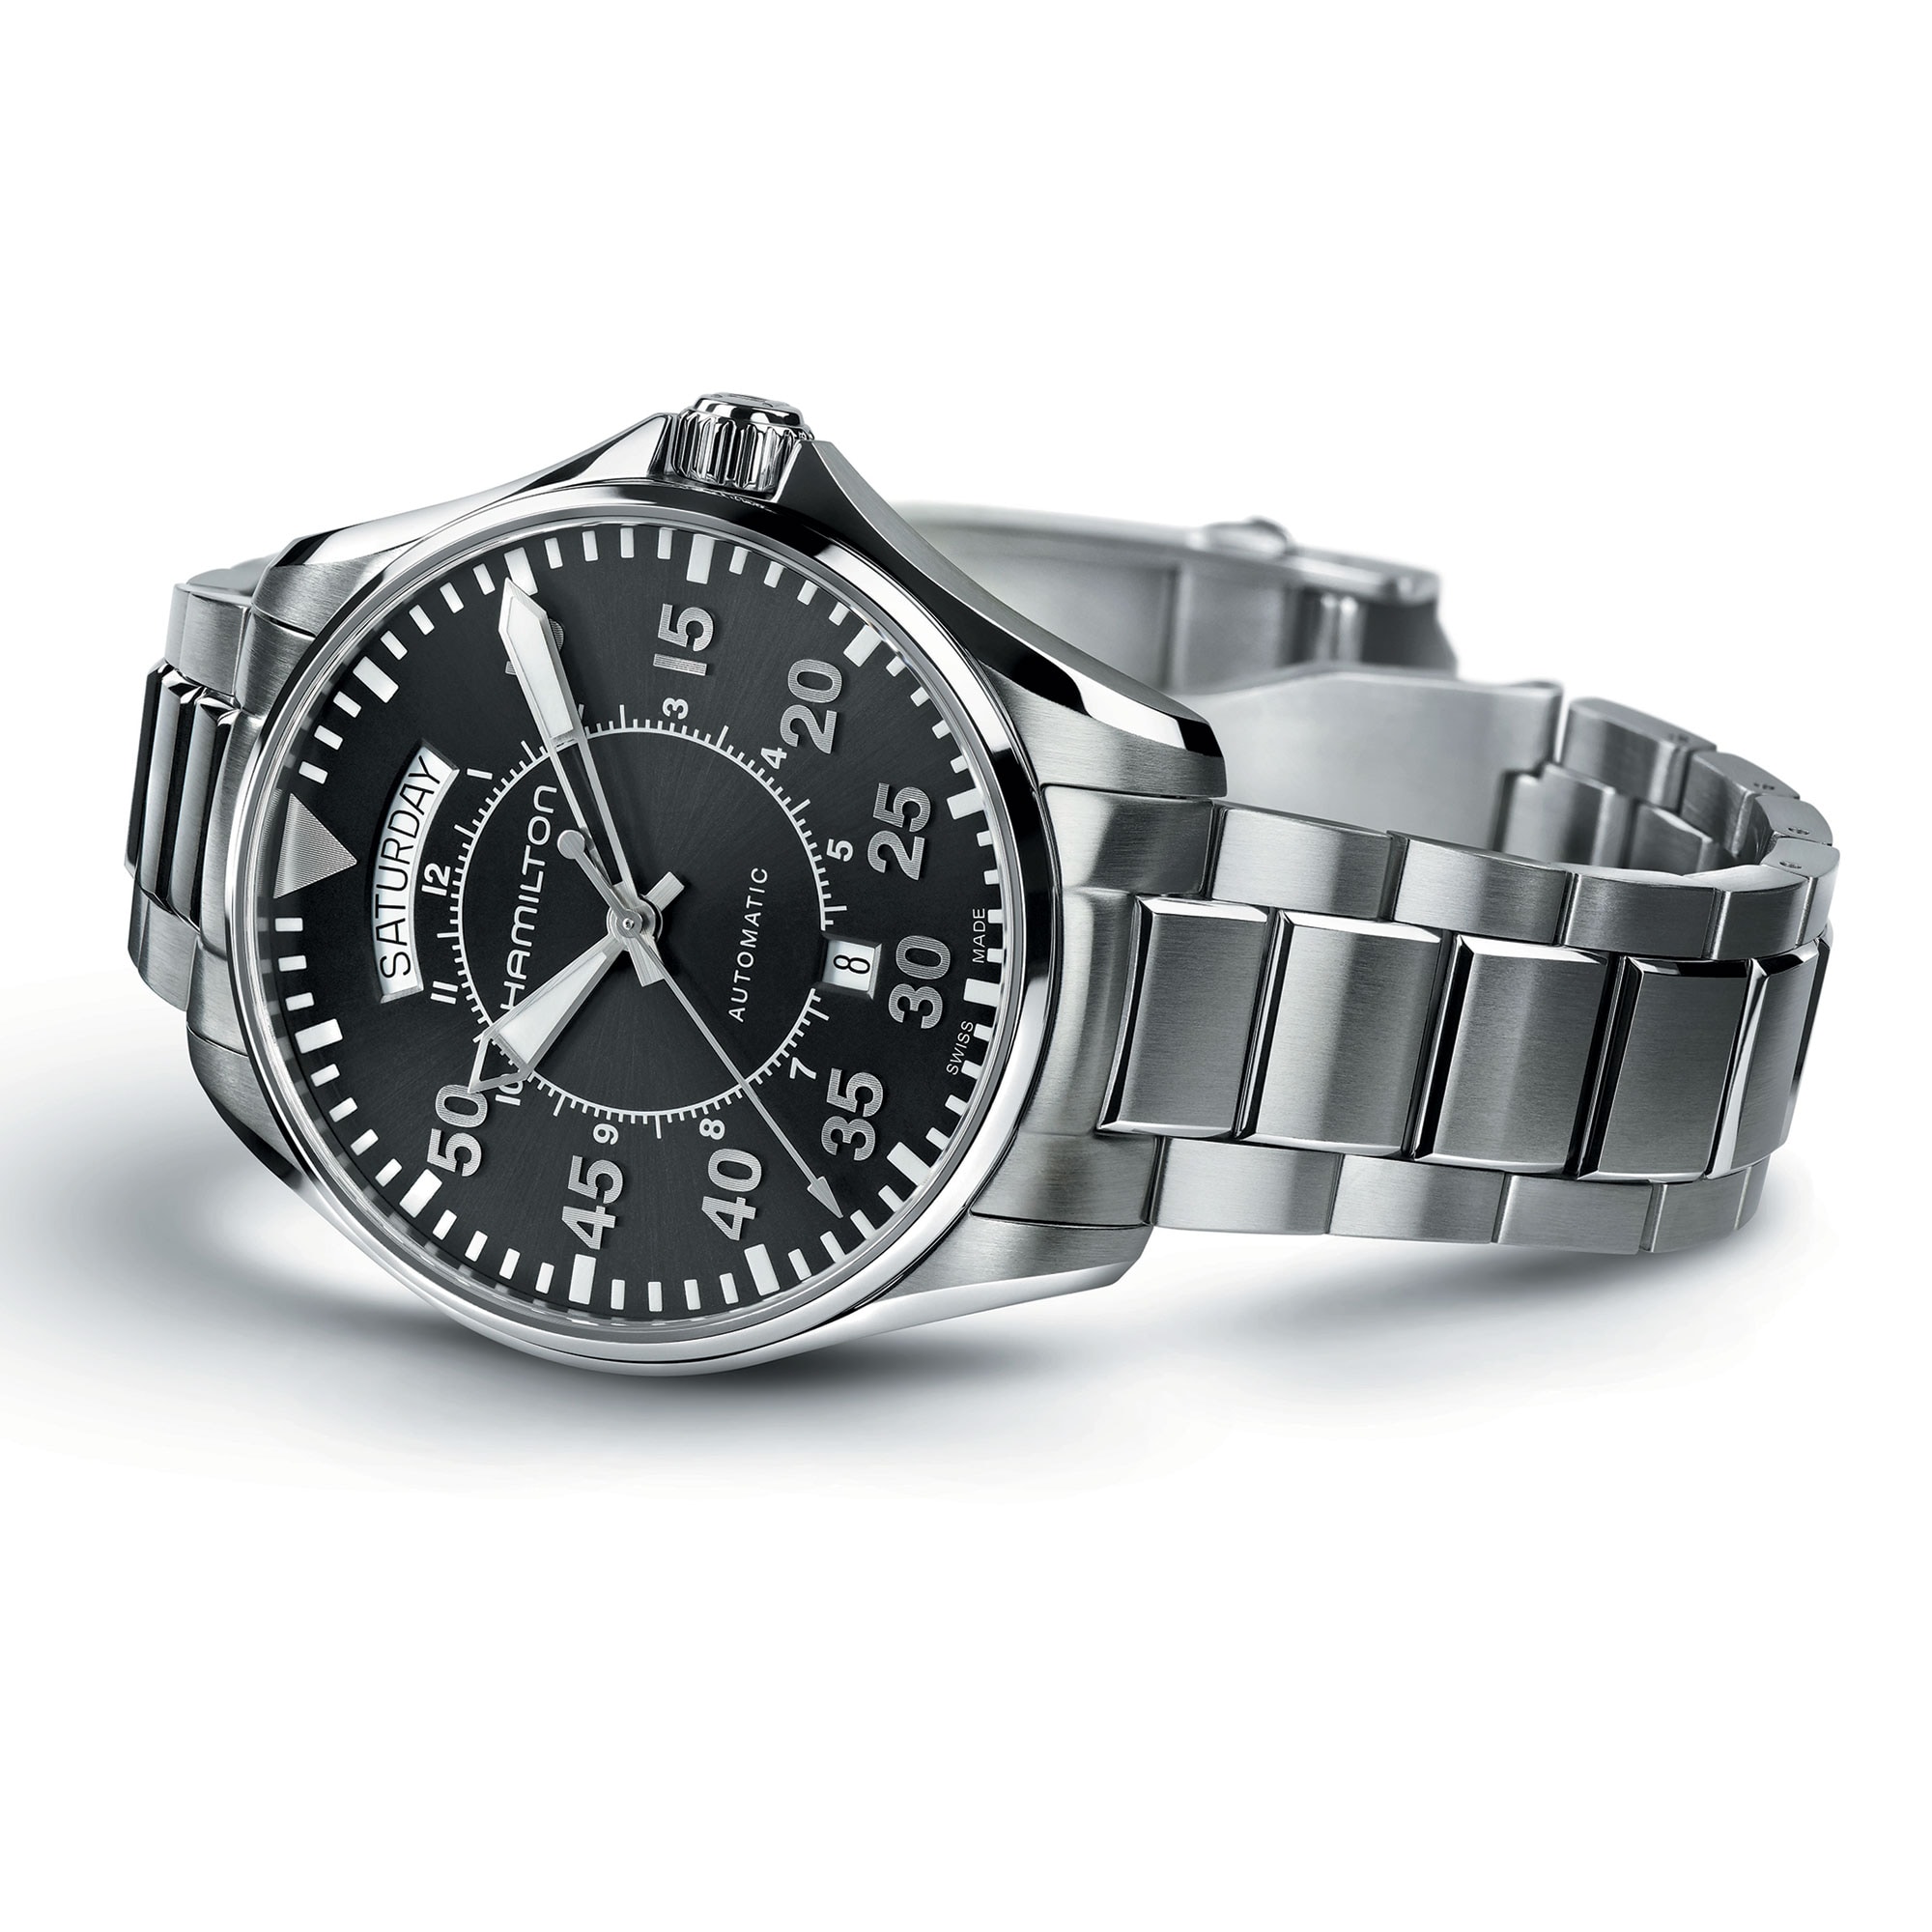 Khaki Aviation Pilot Day Date Automatic Watch - Hamilton Watch